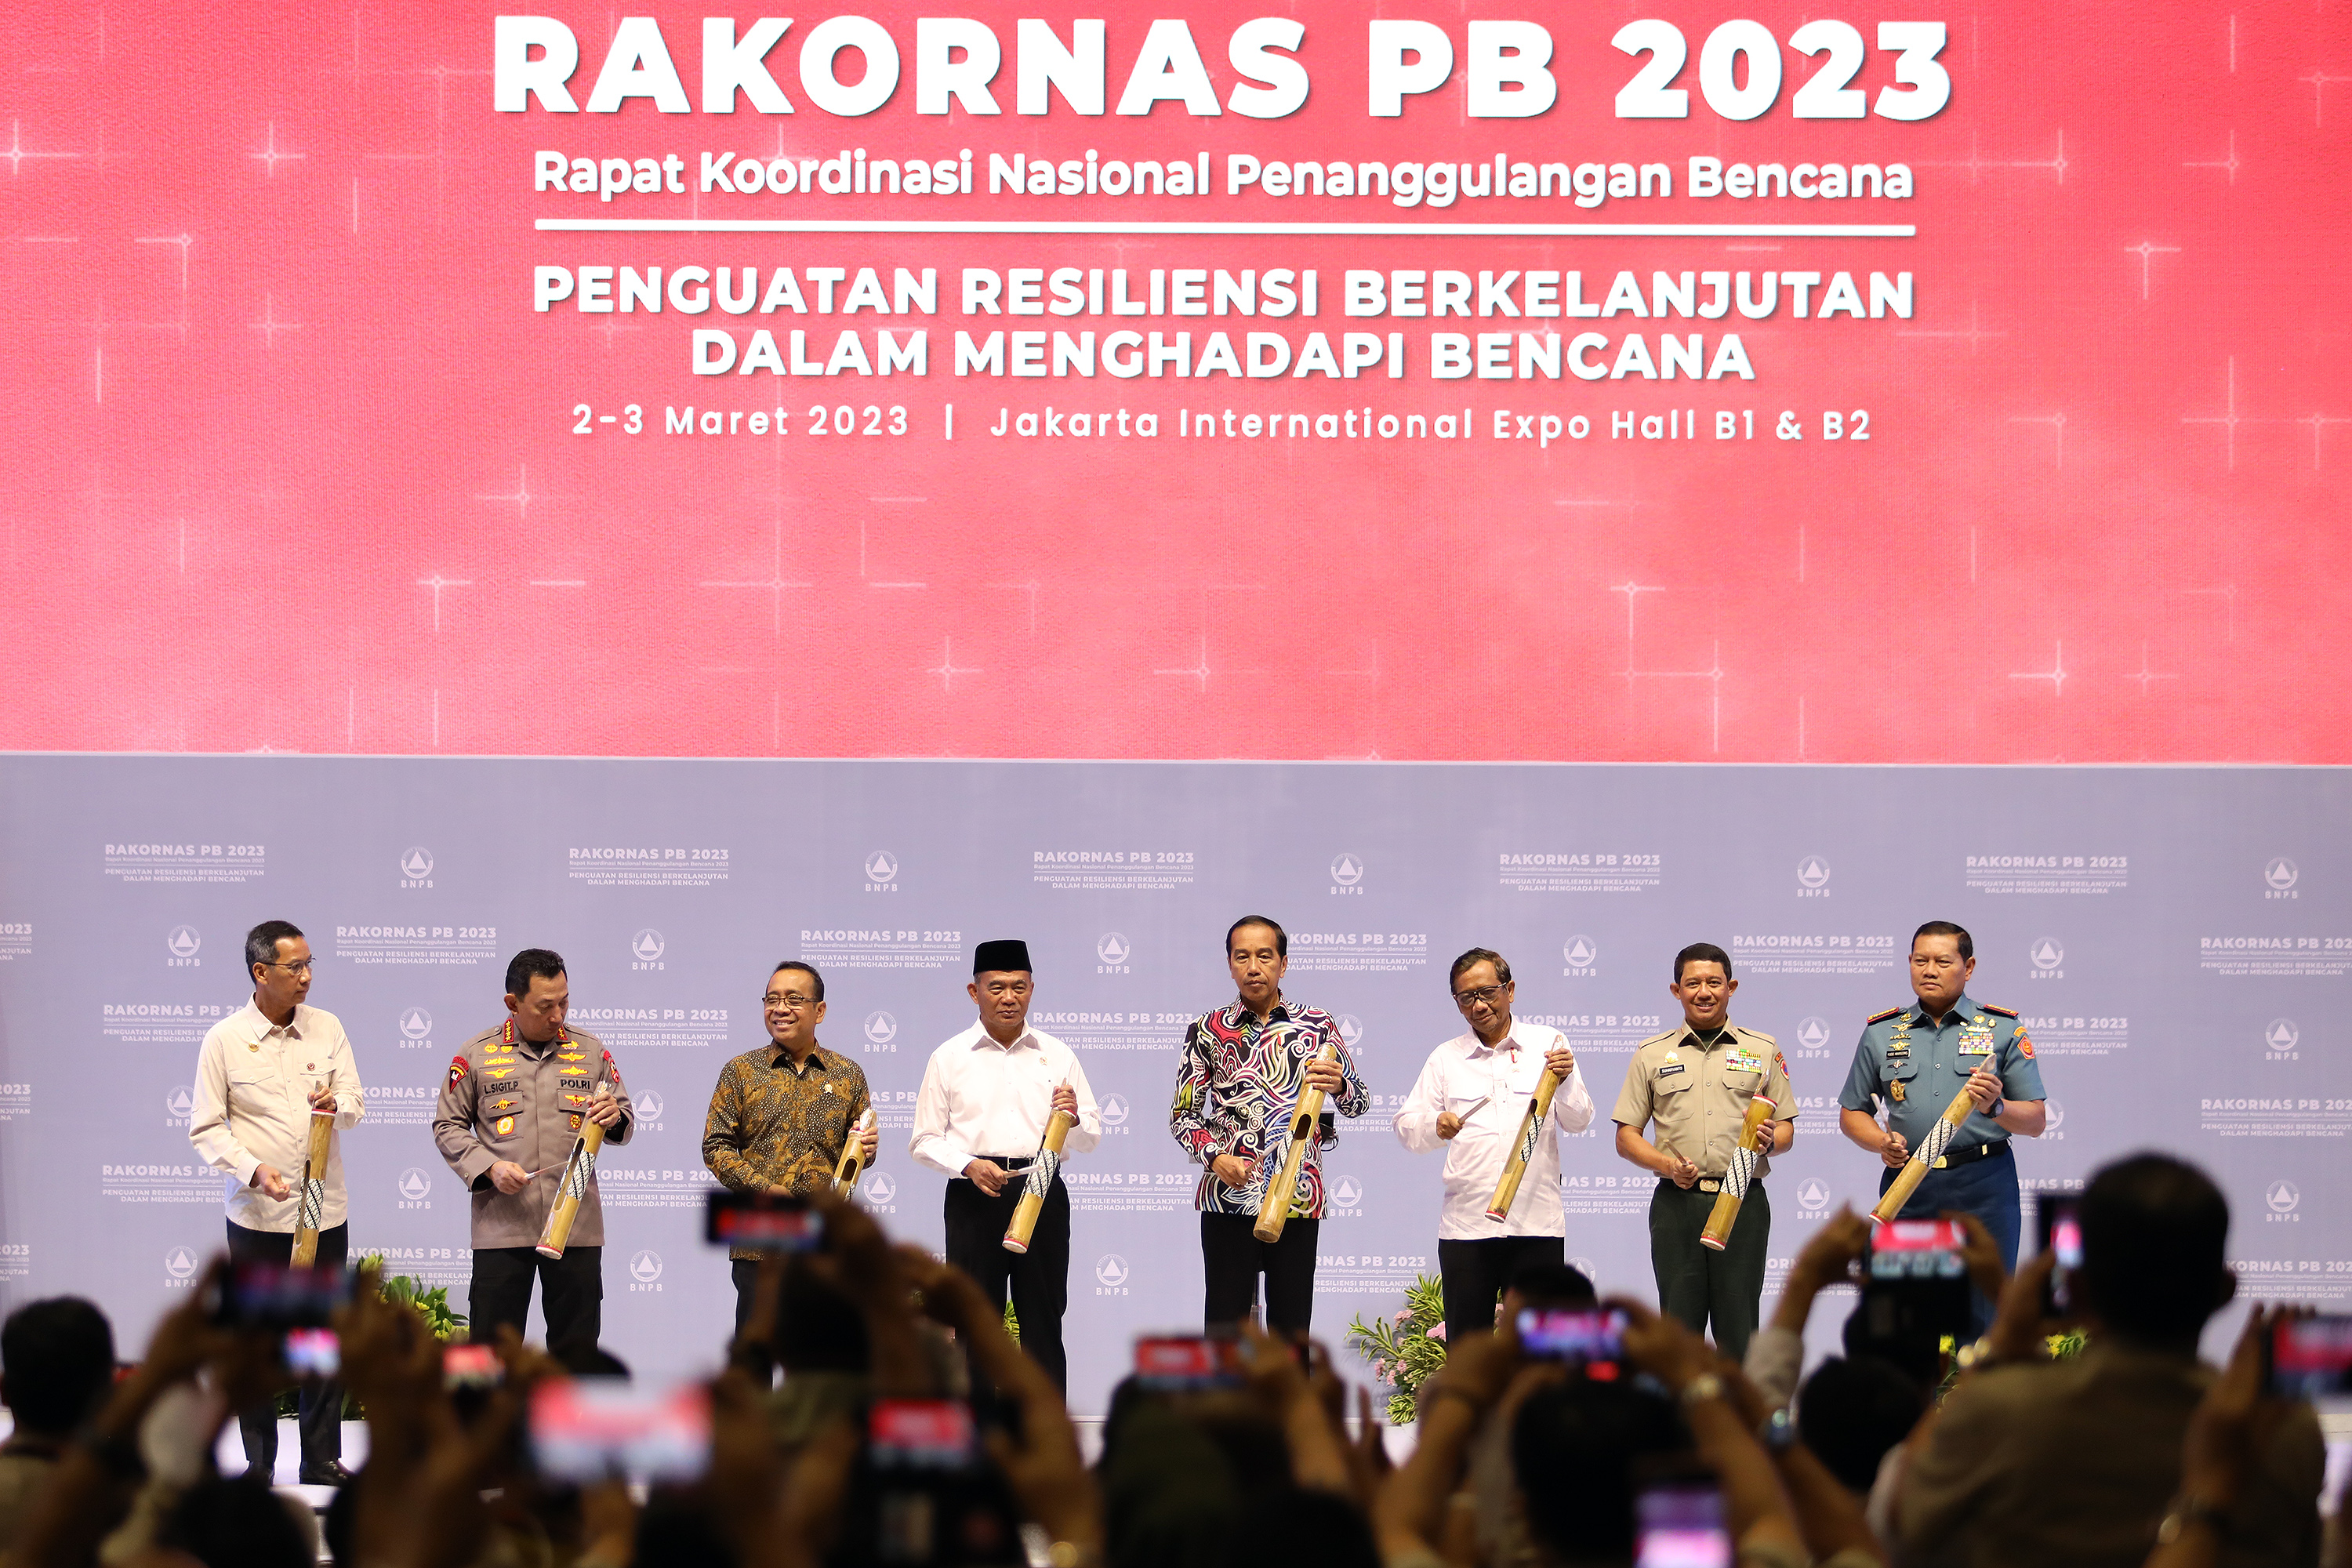 Presiden Joko Widodo (empat kanan) bersama Kepala BNPB Suharyanto (dua kanan), Panglima TNI Yudo Margono (kanan), Kapolri Listyo Sigit P (dua kiri), Mensesneg Pratikno (tiga kiri), Menko PMK Muhadjir Effendy (empat kiri) dan Menko Polhukam Mahfud MD (tiga kanan) memukul kentongan sebagai simbol pembukaan acara Rakornas PB BNPB 2023 di Jakarta International Expo (JiExpo) Kemayoran, Jakarta Pusat, Kamis (3/3). 